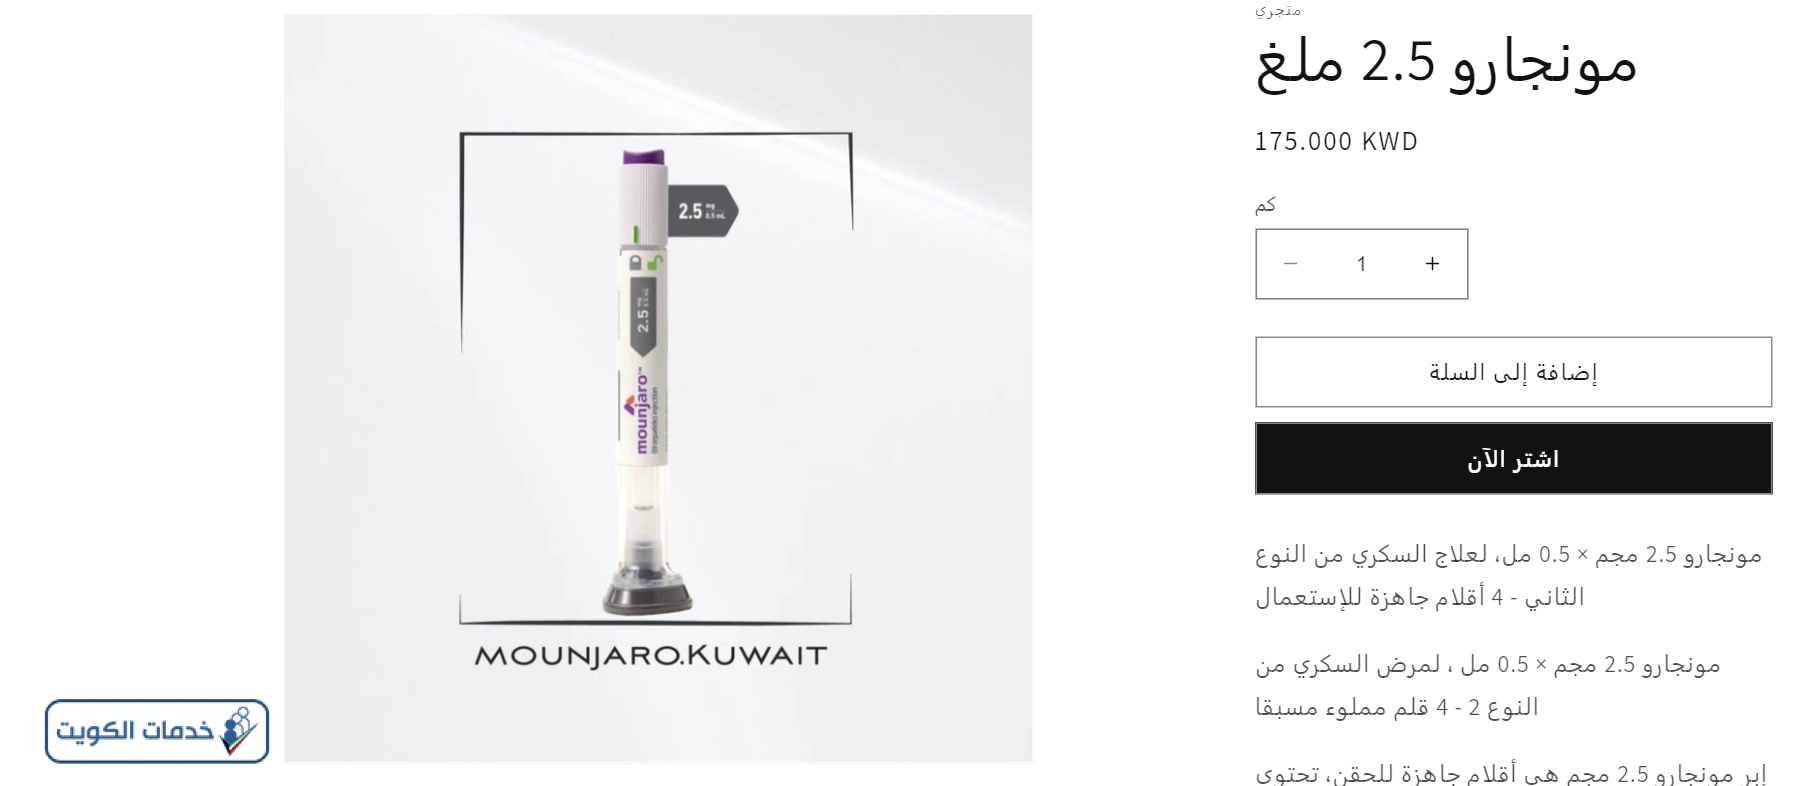 شراء ابرة مونجارو في الكويت